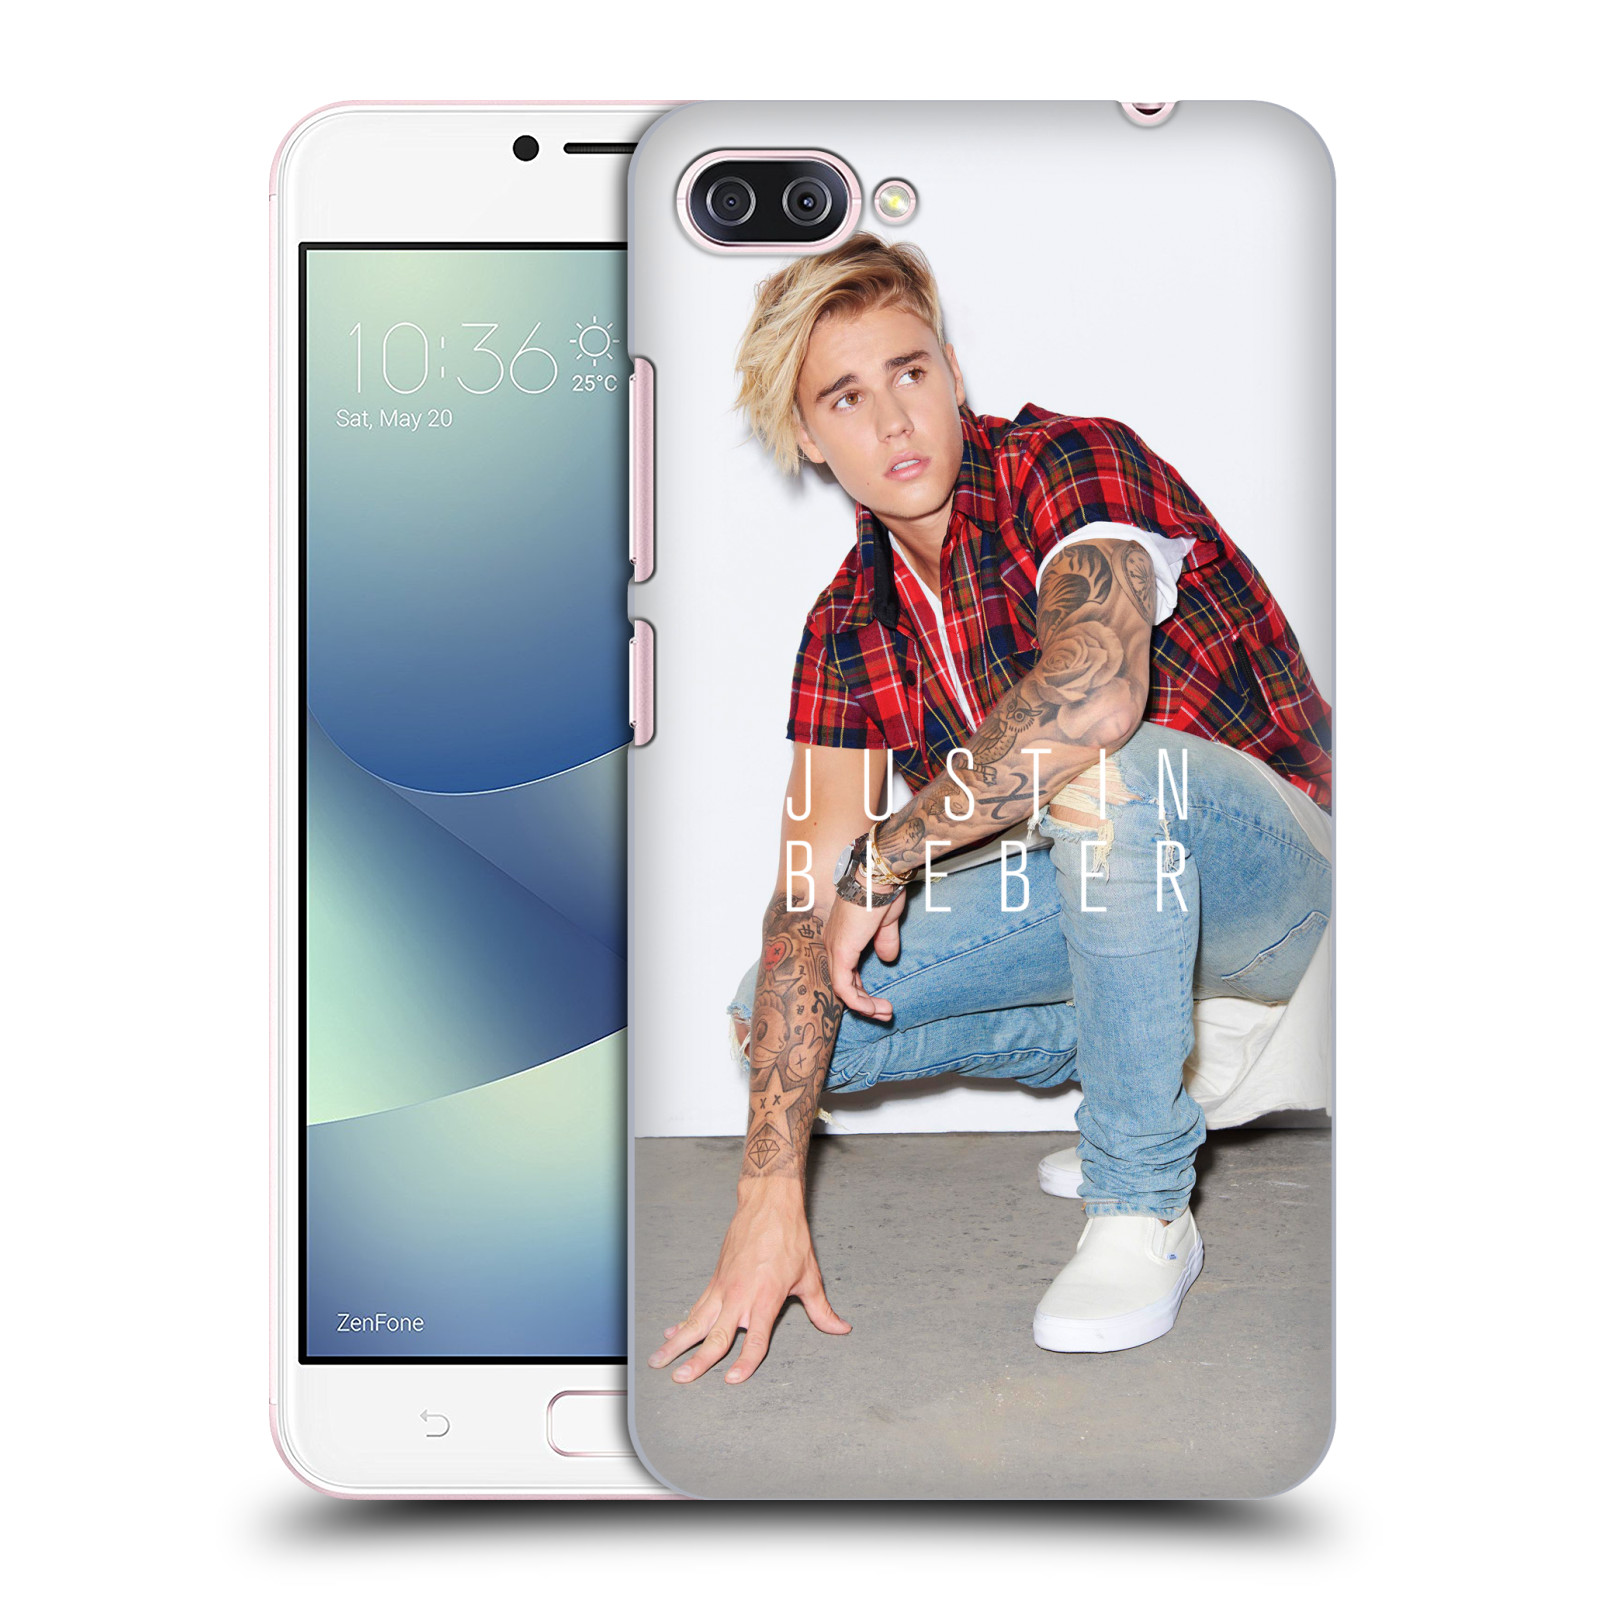 HEAD CASE plastový obal na mobil Asus Zenfone 4 MAX ZC554KL Justin Bieber foto Purpose tour kalendář